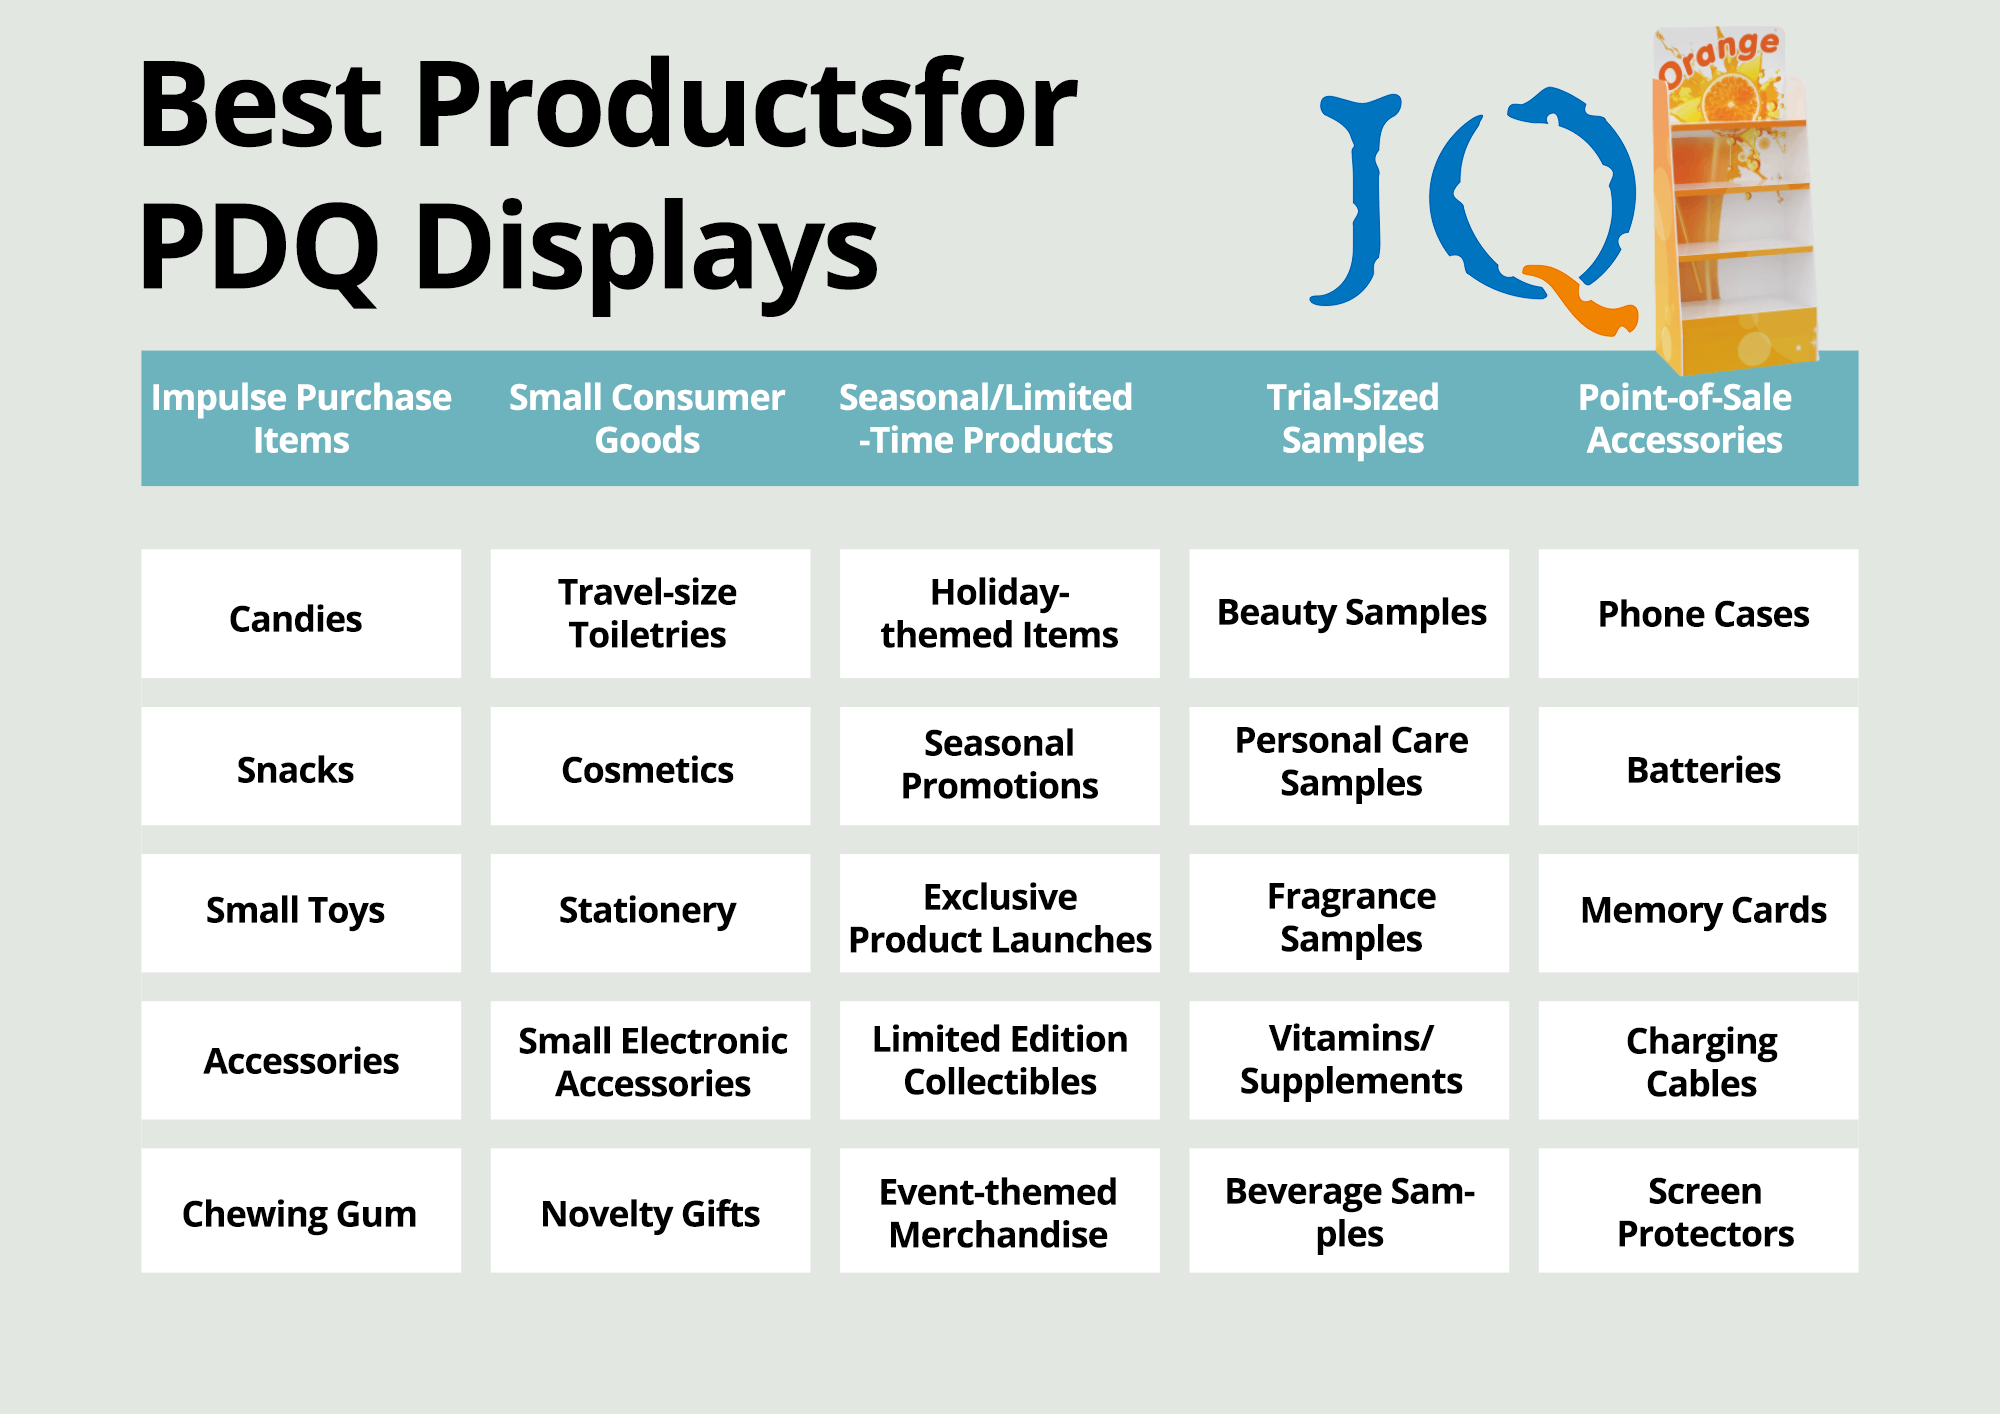 PDQ डिस्प्लेसाठी कोणती उत्पादने योग्य आहेत